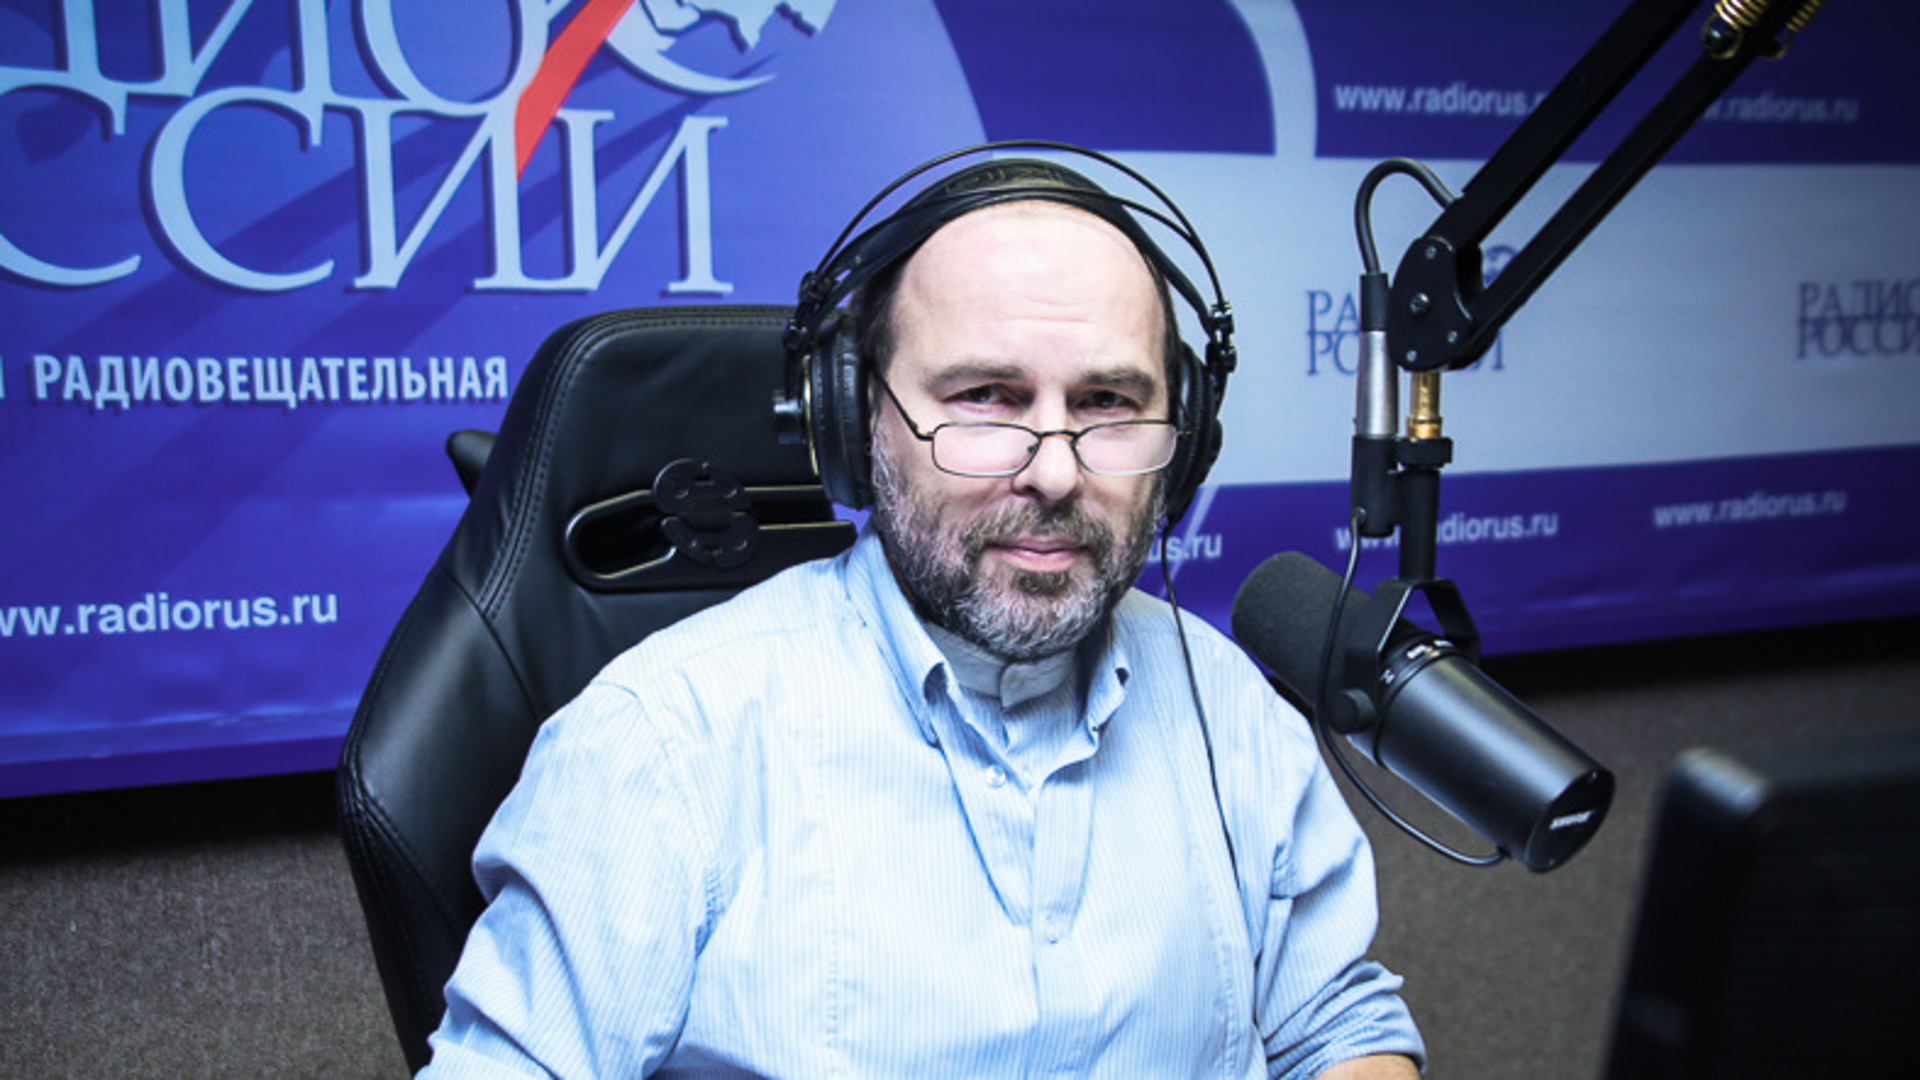 Хабургаев Александр радио России